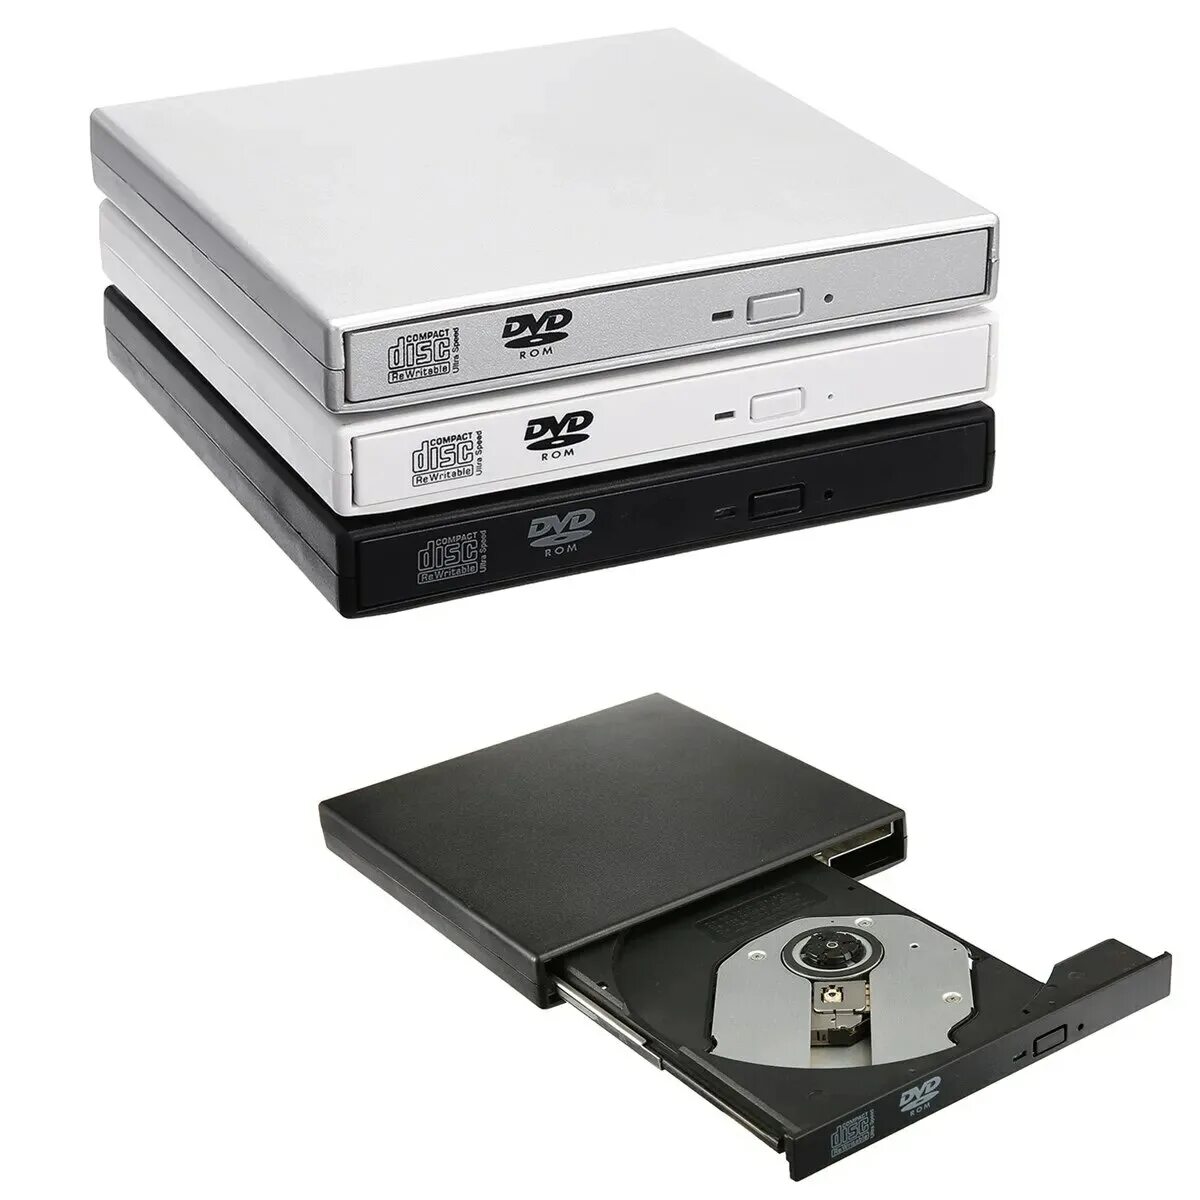 USB внешний CD RW привод. CD-ROM/RW, DVD-ROM/RW. Внешний DVD-RW привод (USB). Юсб двд Ром. Cd dvd привод купить